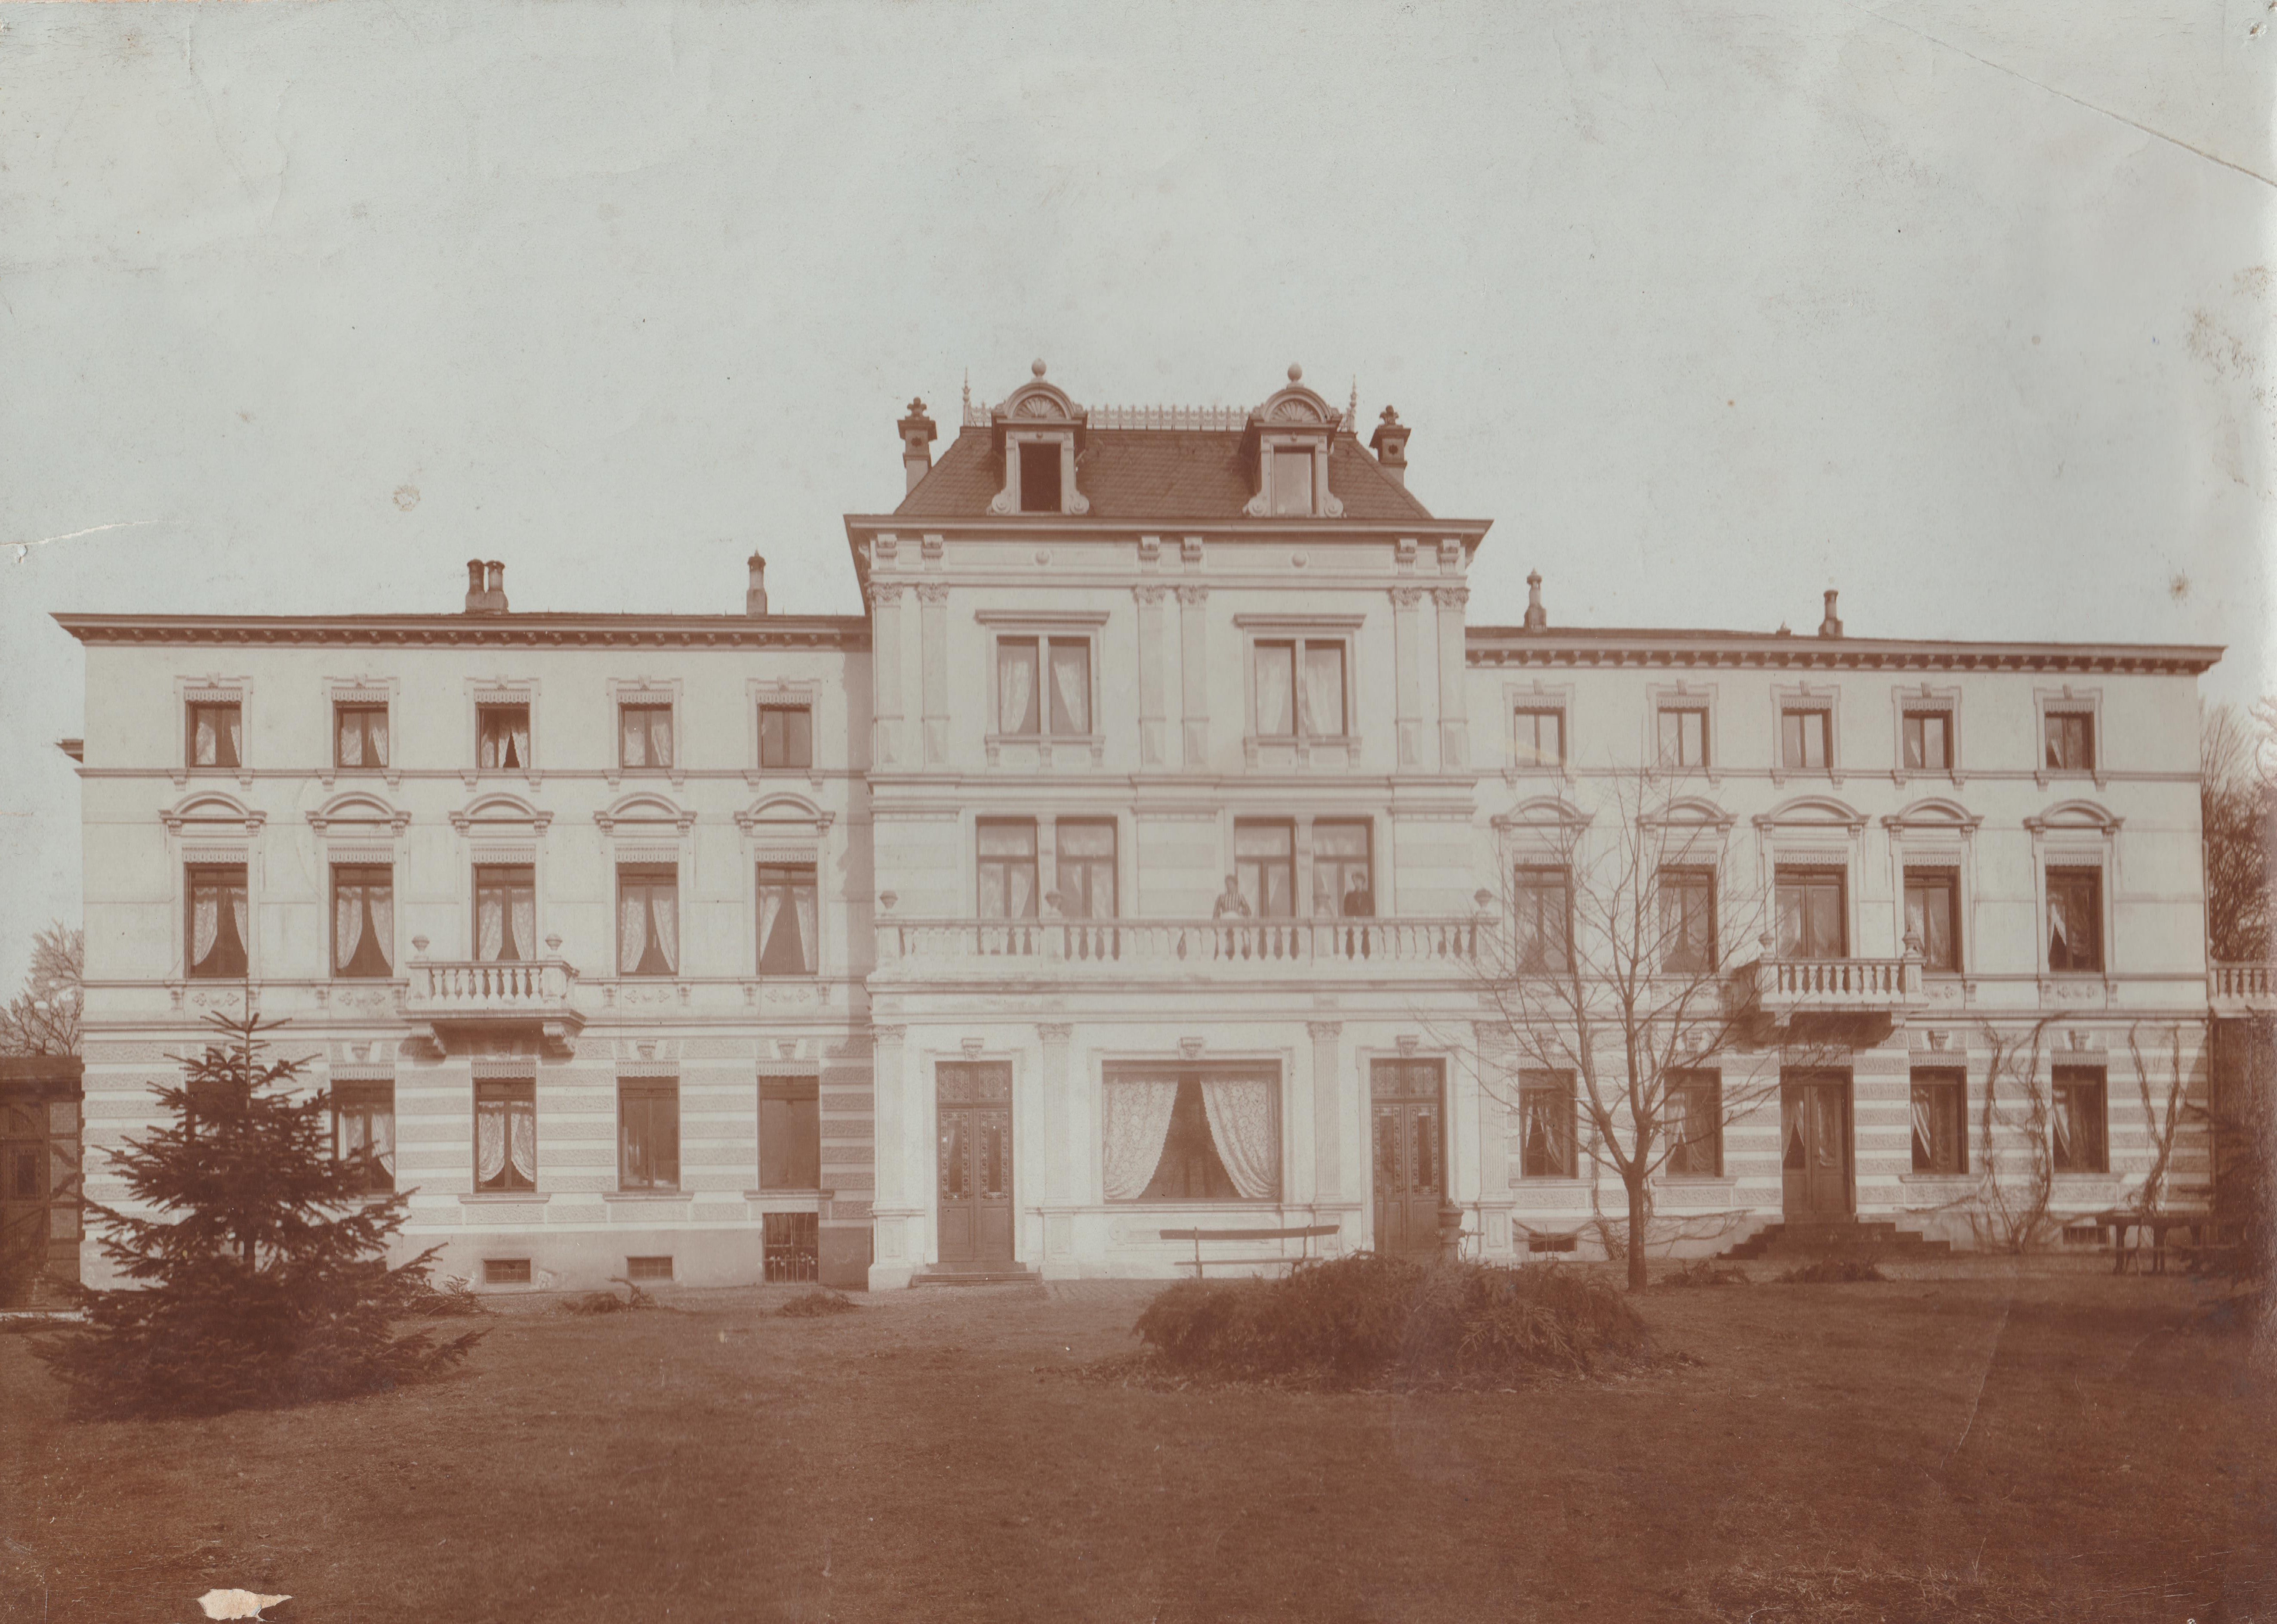 Wasserheilanstalt "Villa Rheinau", Sanatorium für Nervenkranke in Bendorf (REM CC BY-NC-SA)